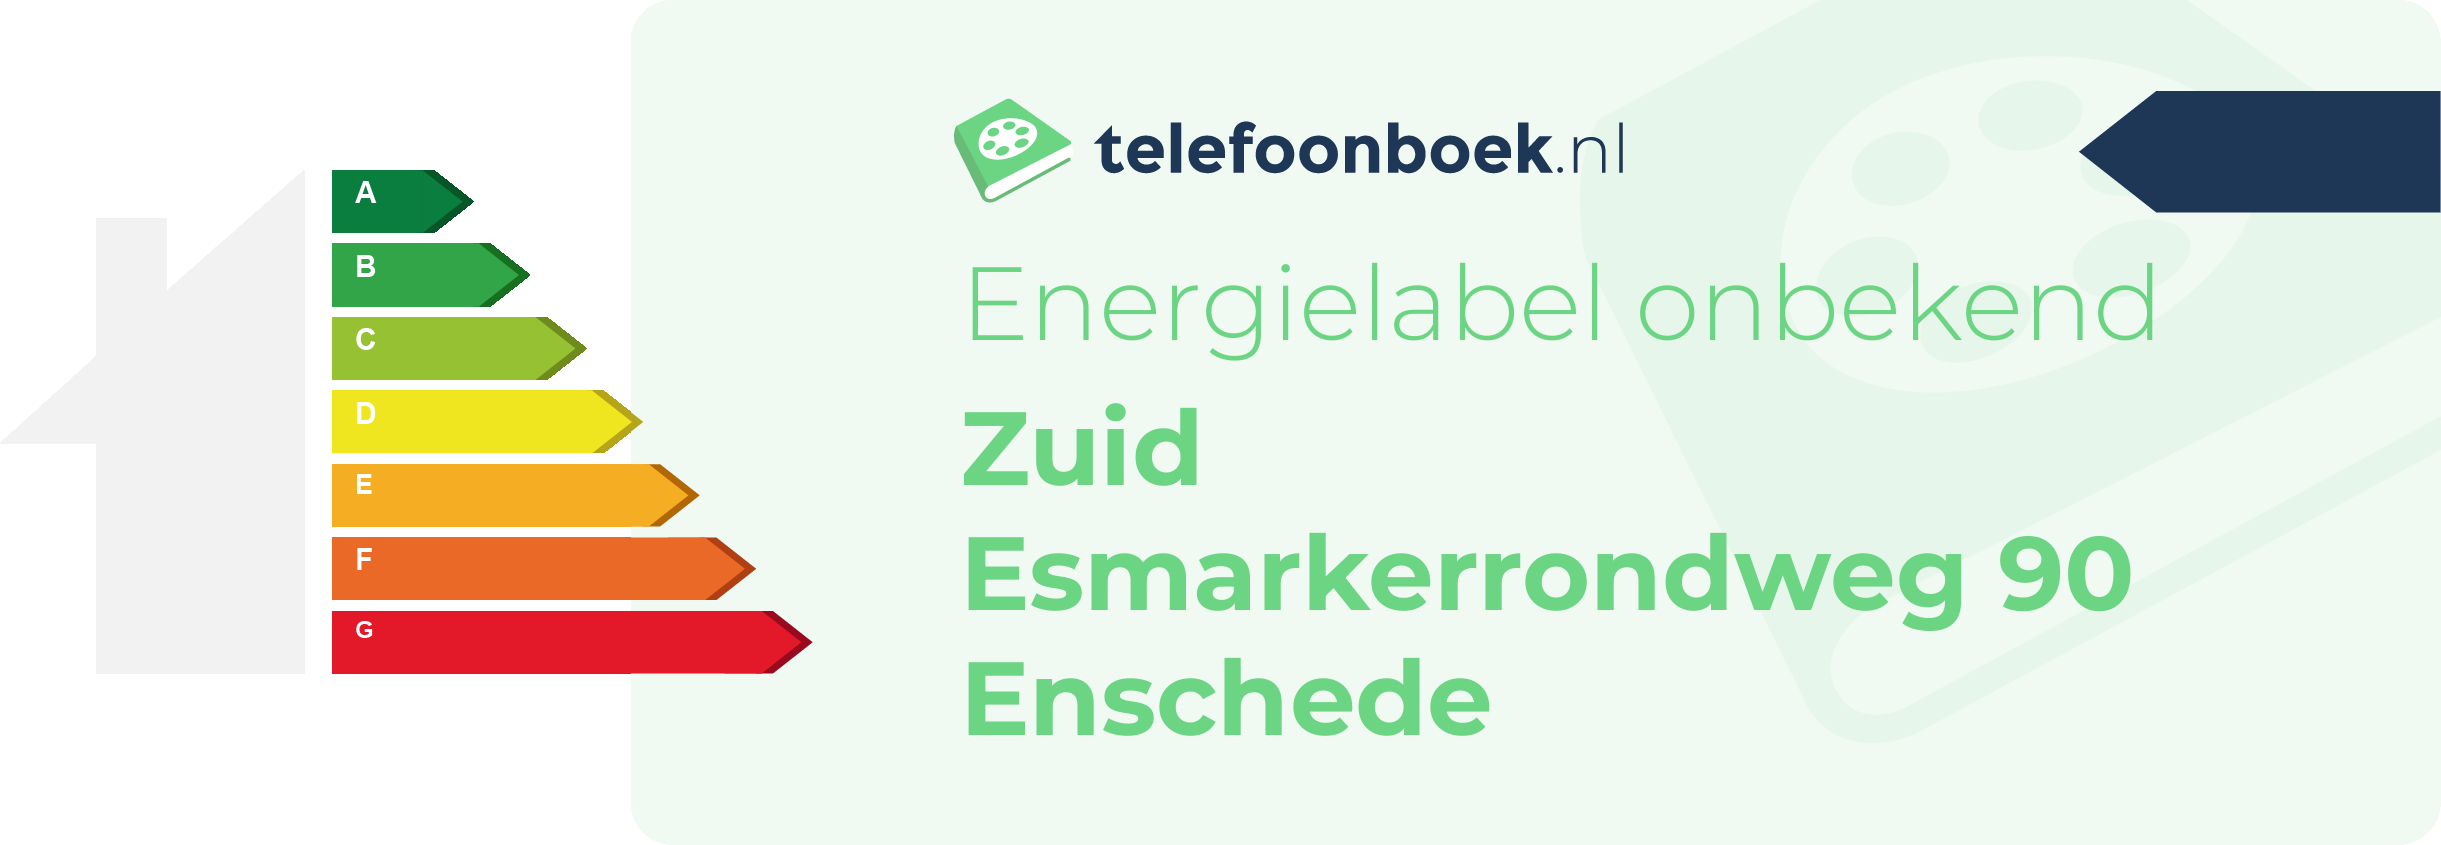 Energielabel Zuid Esmarkerrondweg 90 Enschede